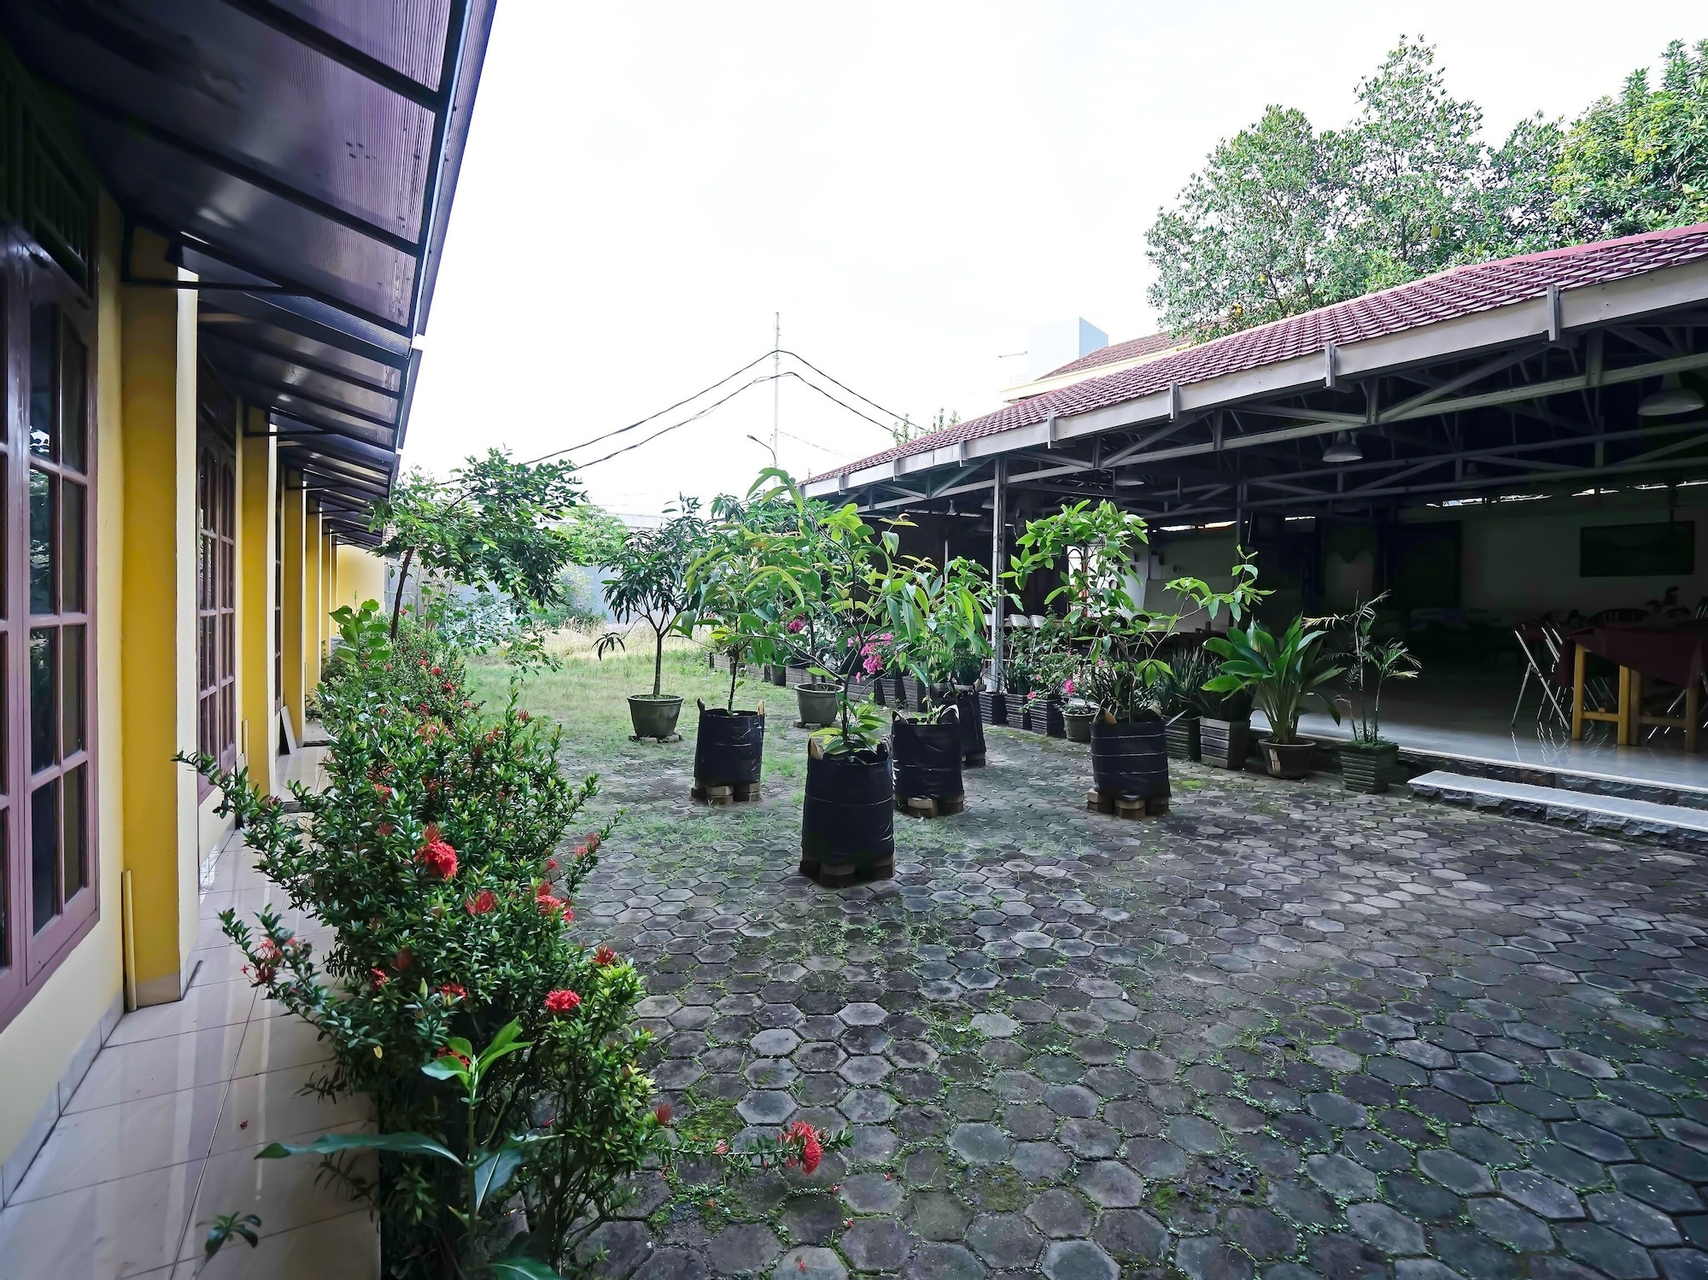 Exterior & Views 2, OYO 335 Wisma Empat Lima Syariah, Palembang